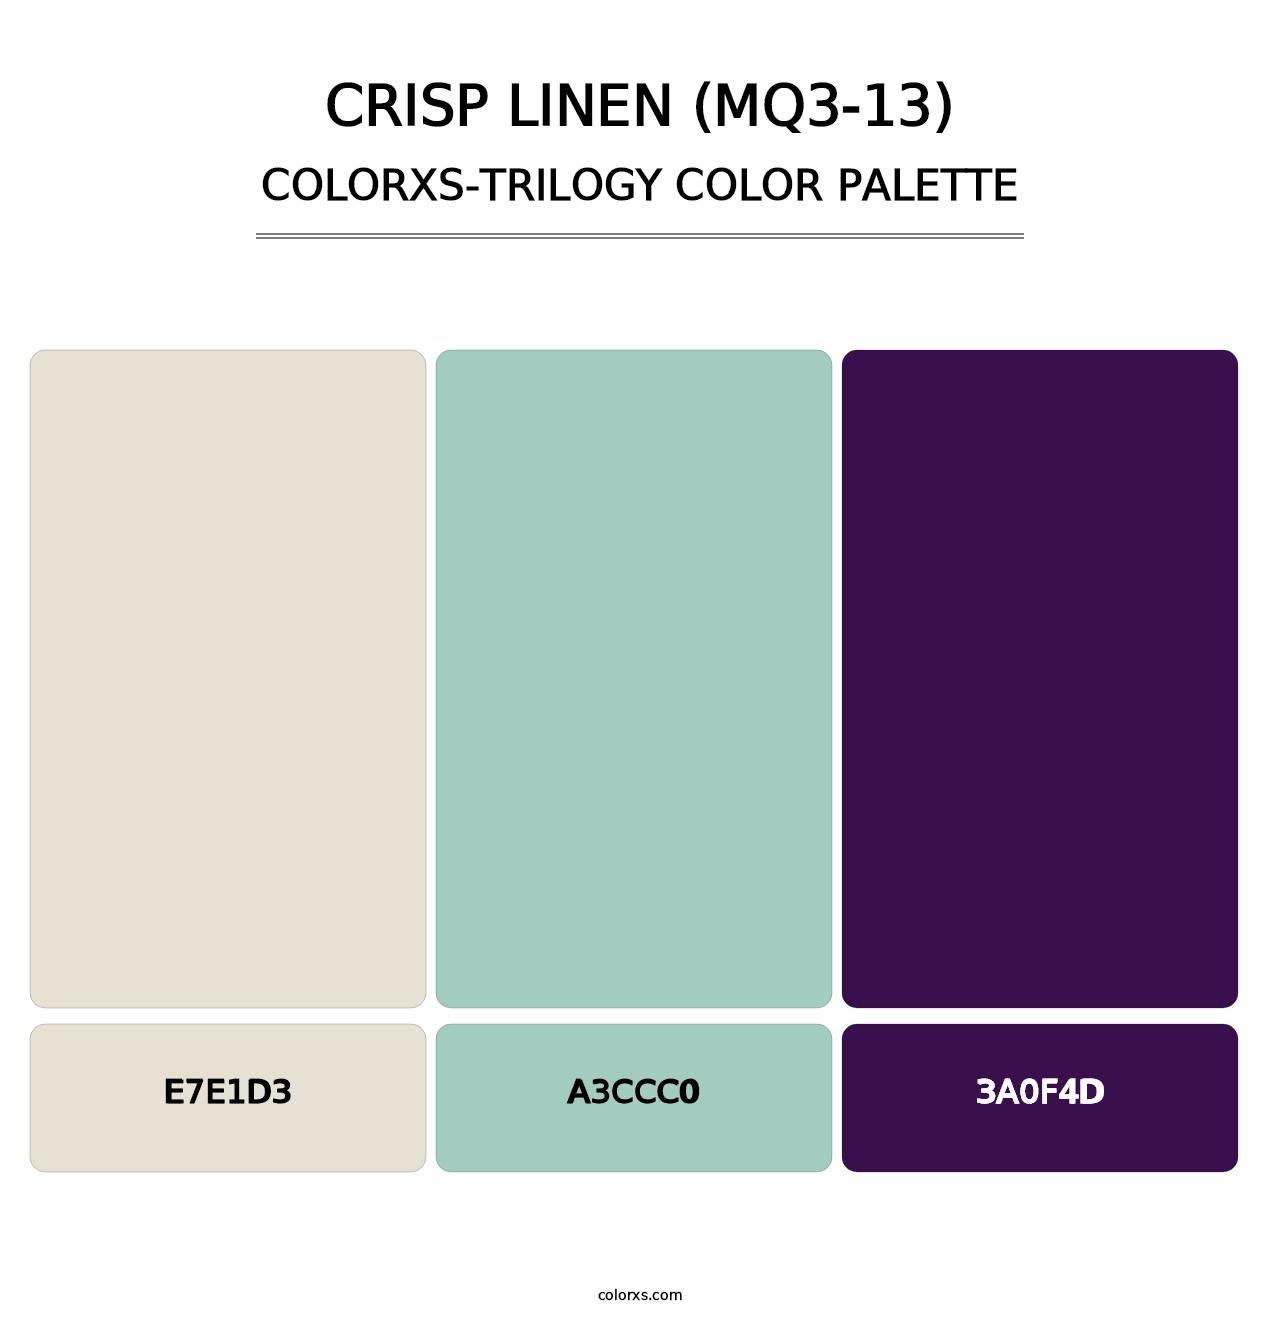 Crisp Linen (MQ3-13) - Colorxs Trilogy Palette